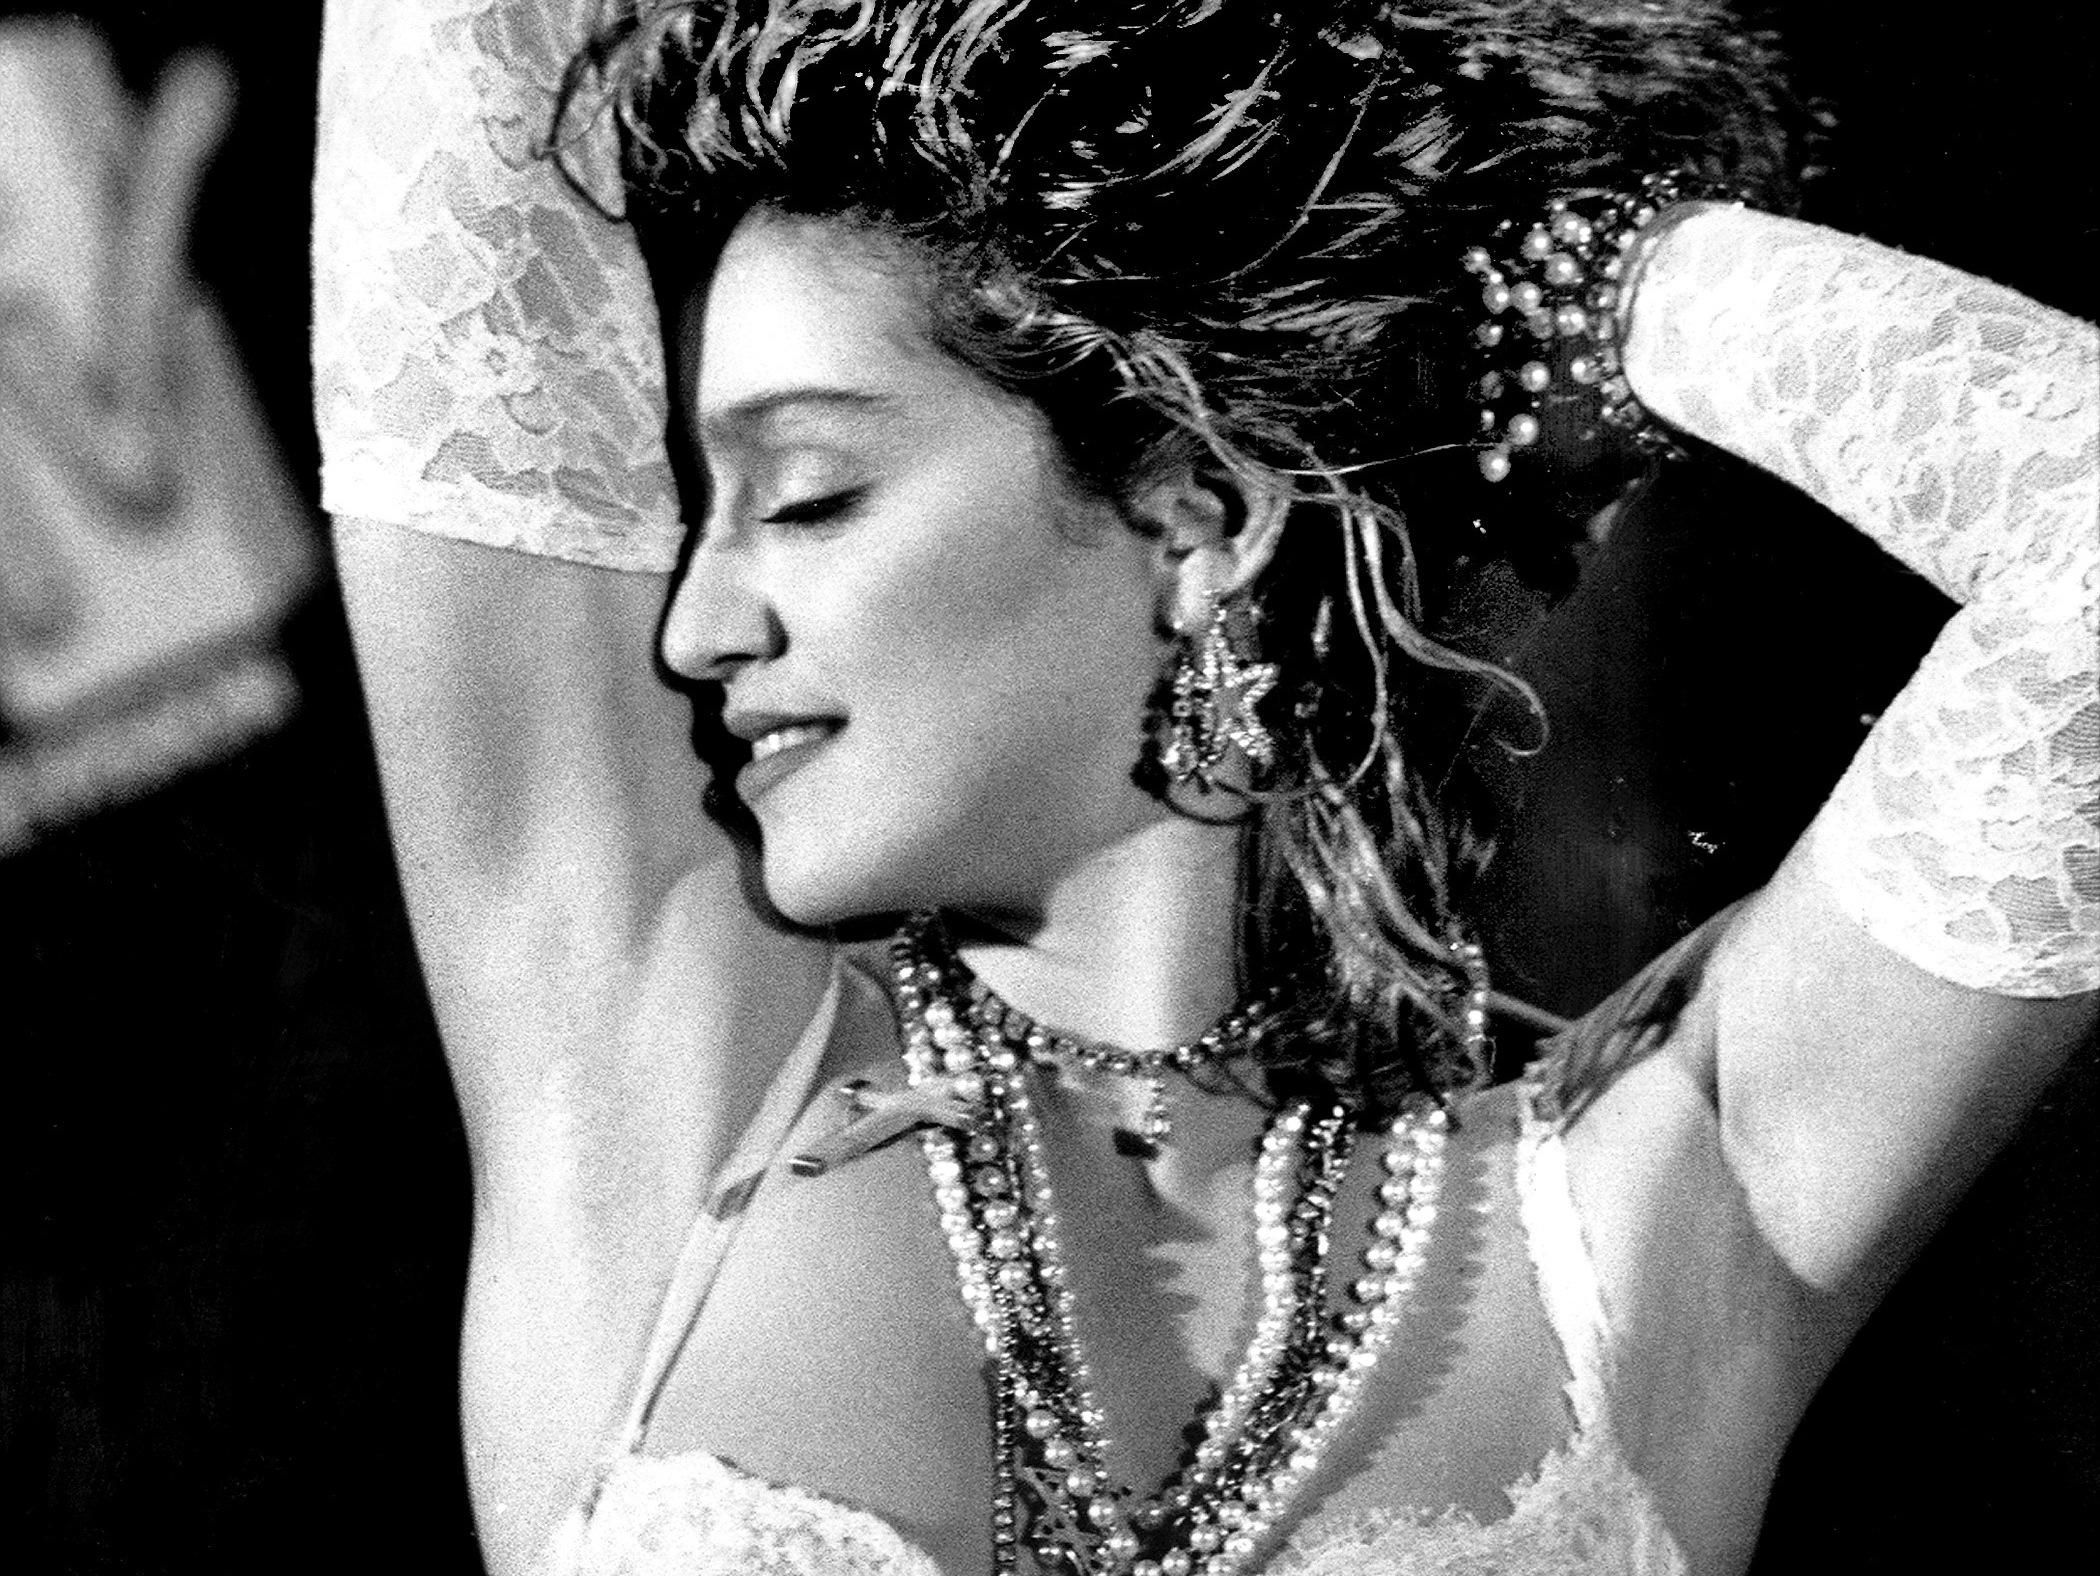 Buon compleanno Madonna: tutti gli album della regina del pop - immagine 3